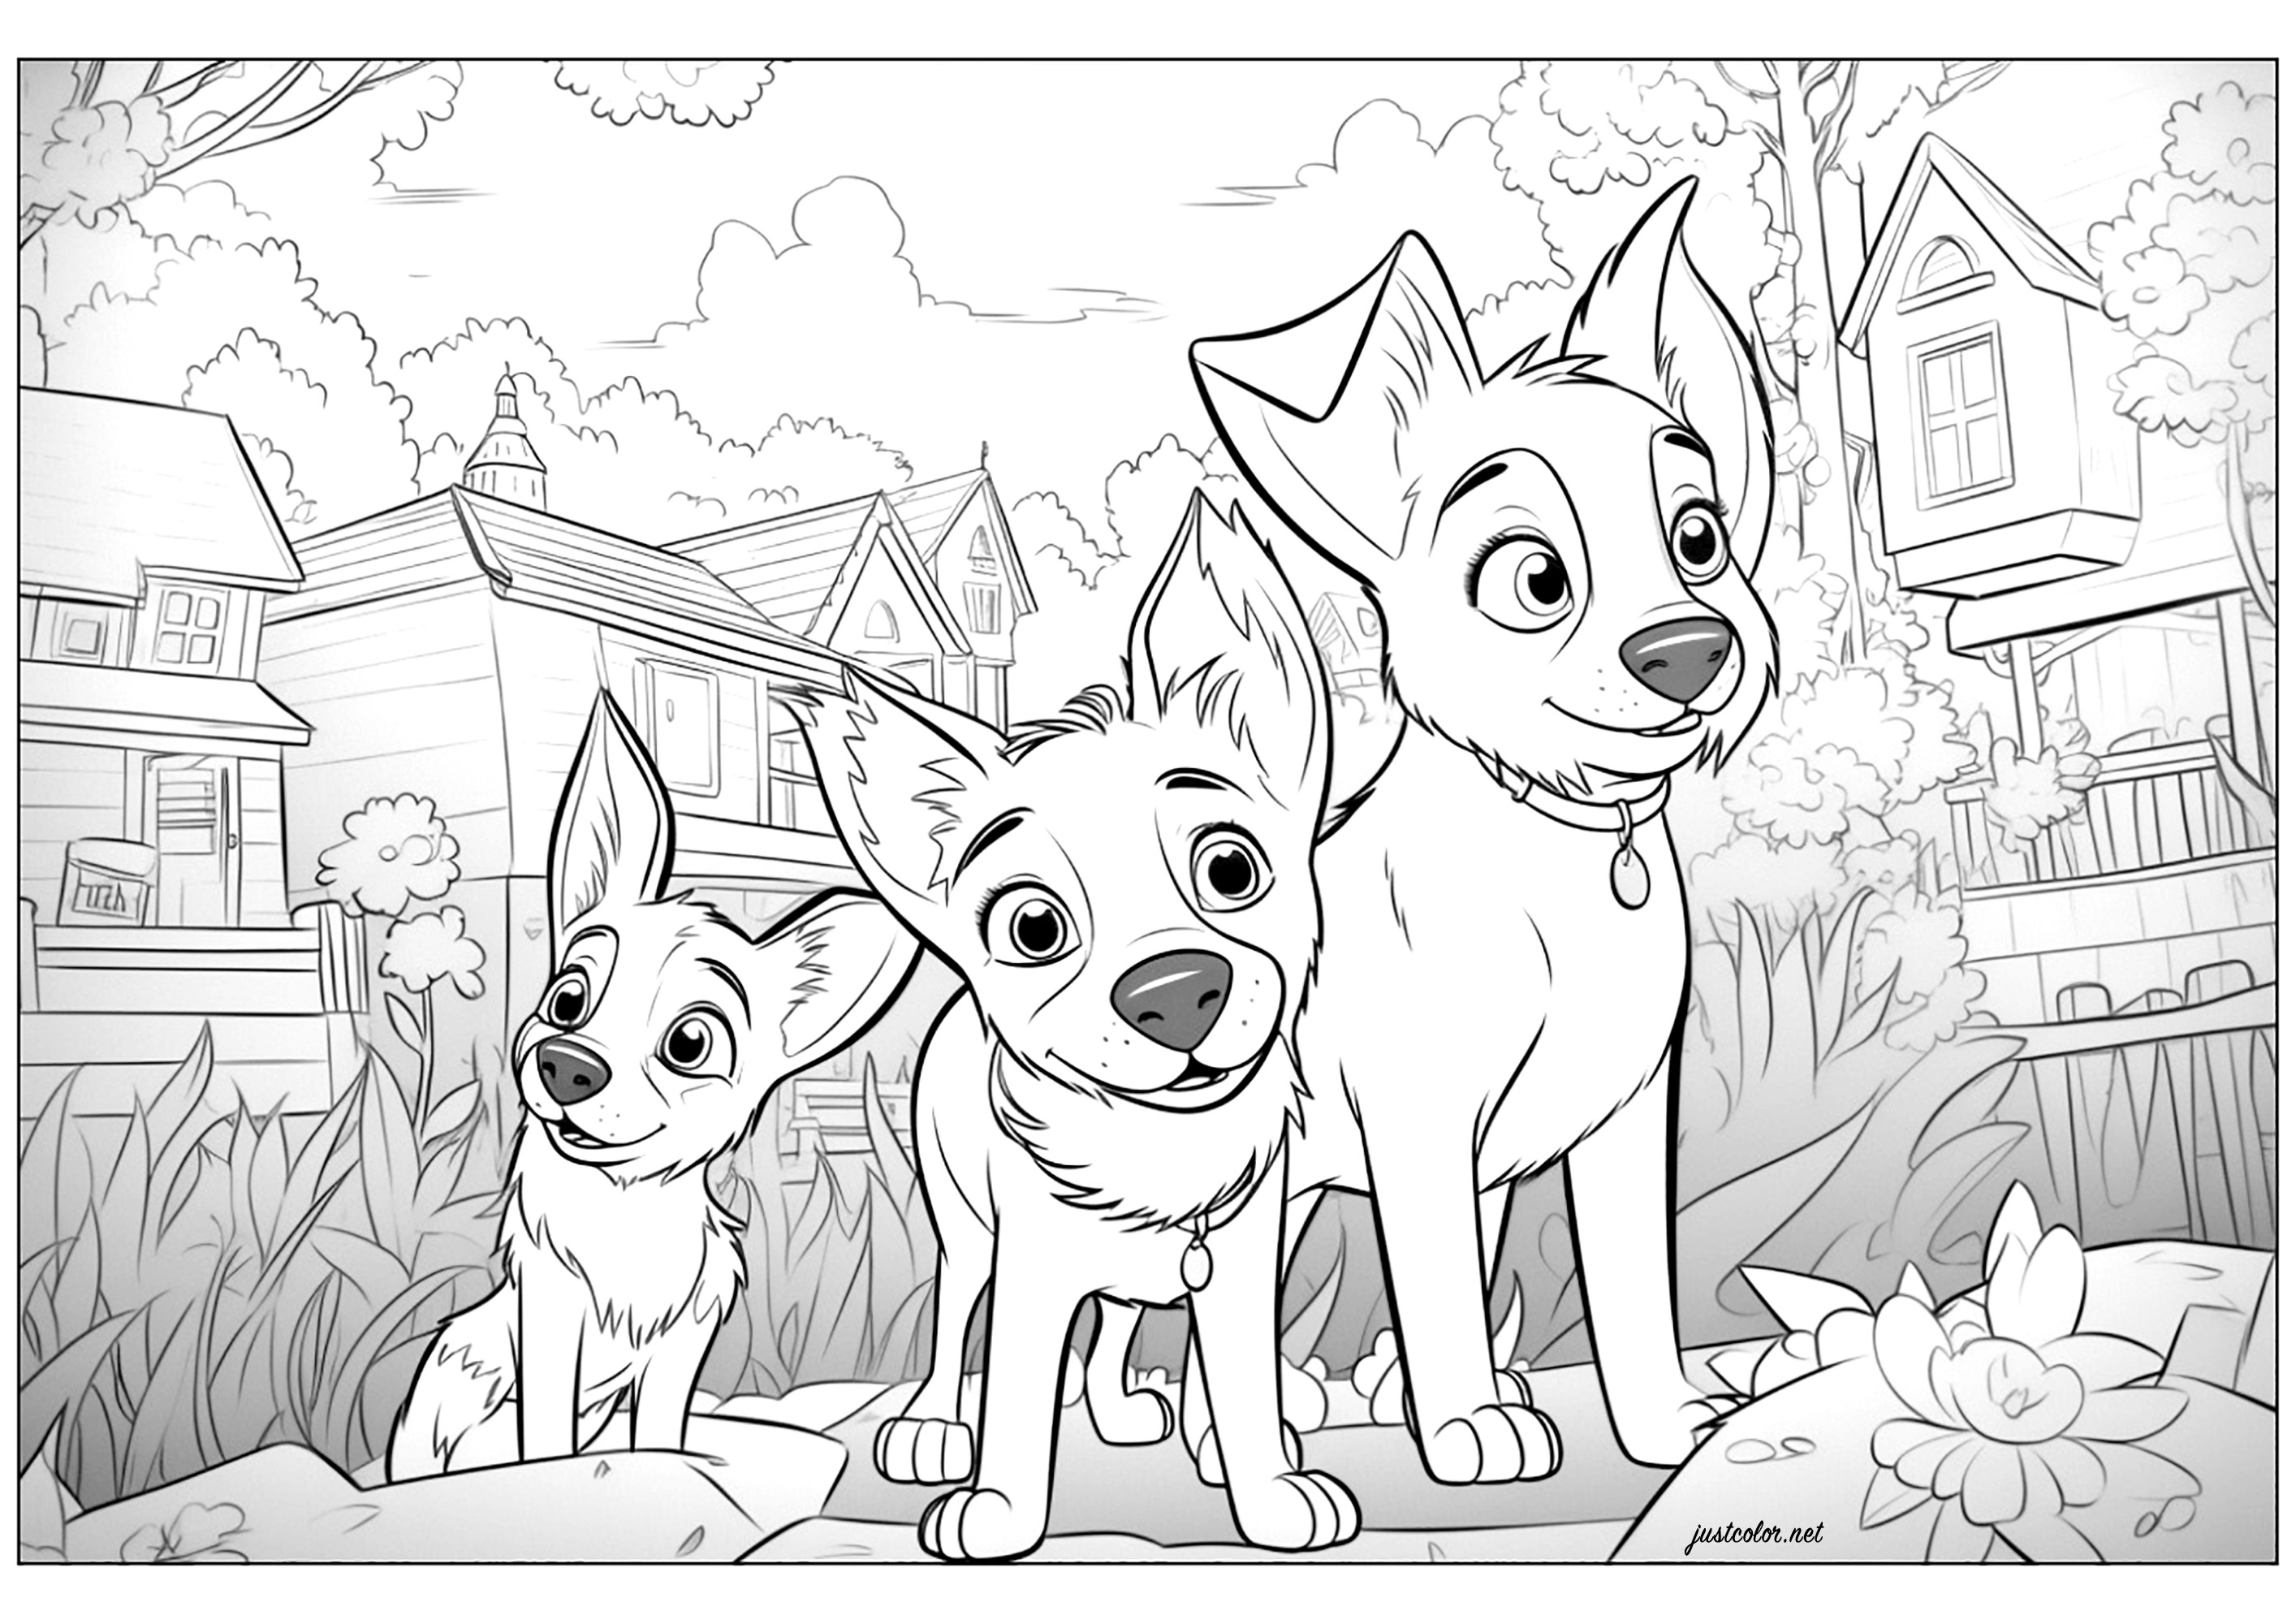 Três cães desenhados ao estilo Disney - Pixar. Colora também todas as casas no fundo desta ilustração original.